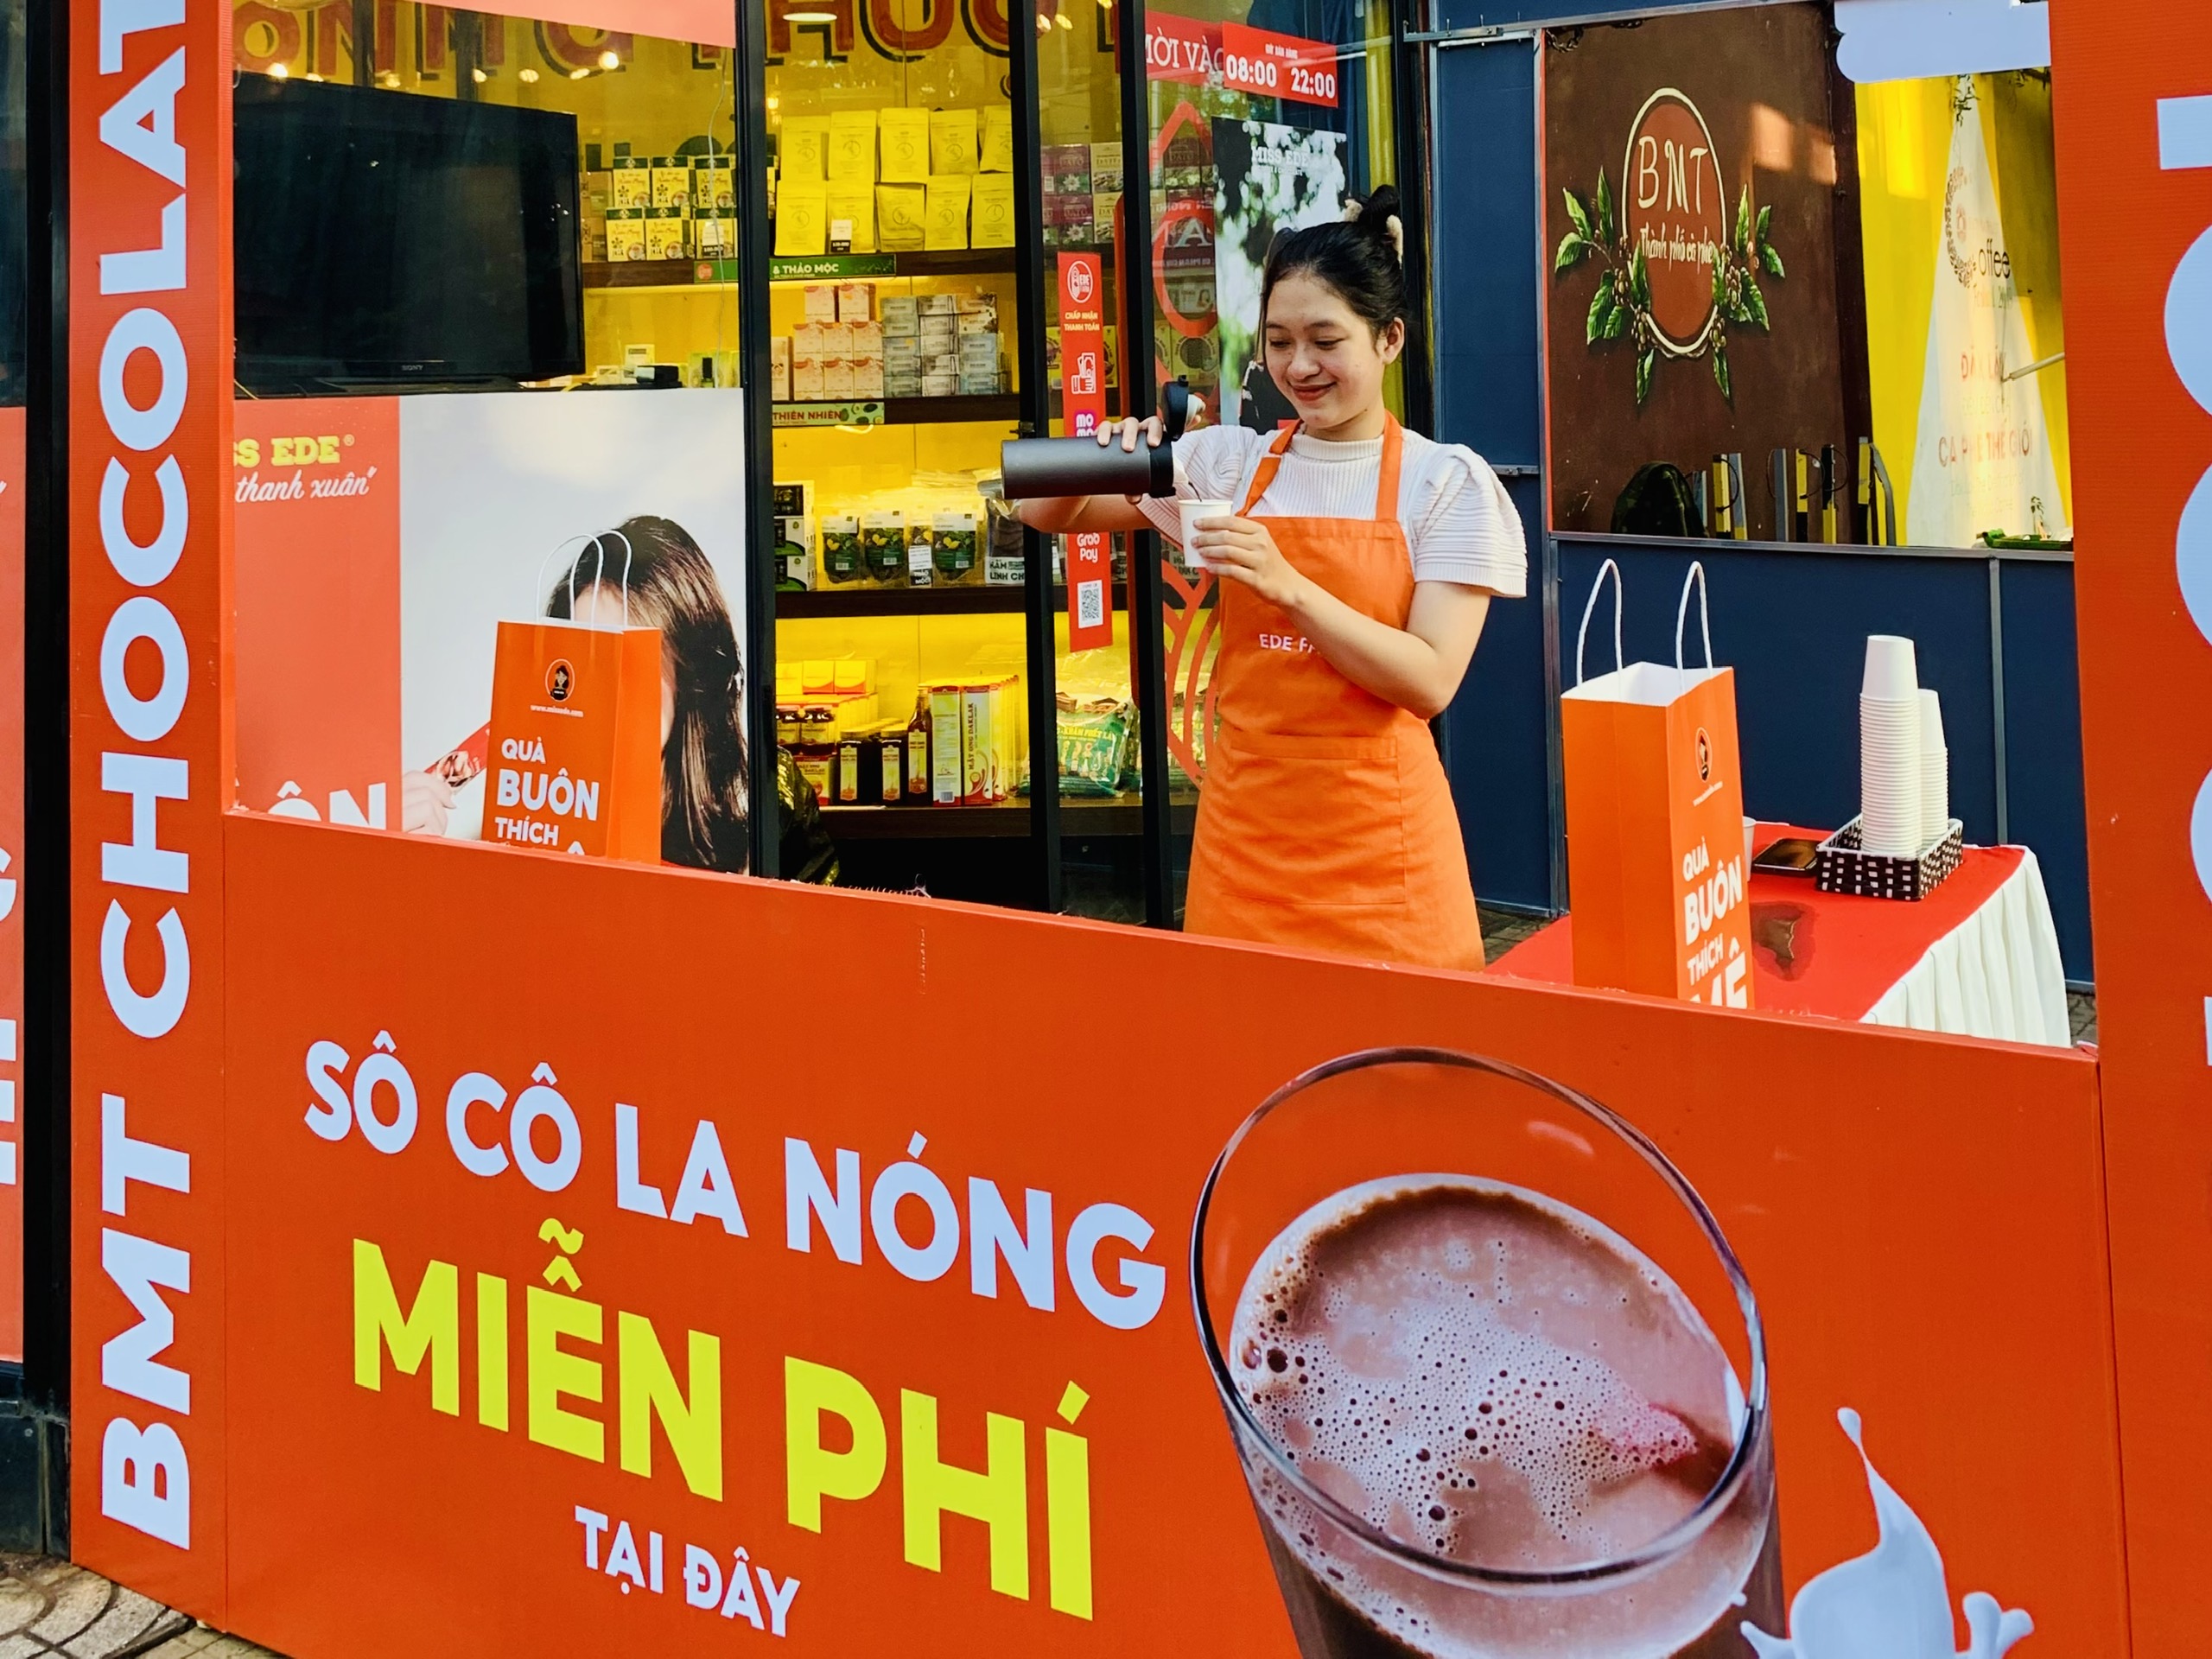 Du khách có thể thưởng thức sôcôla và cà phê miễn phí tại Đường sách cà phê Buôn Ma Thuột (cổng số 2 đường Phan Chu Trinh, phường Thắng Lợi, TP Buôn Ma Thuột).